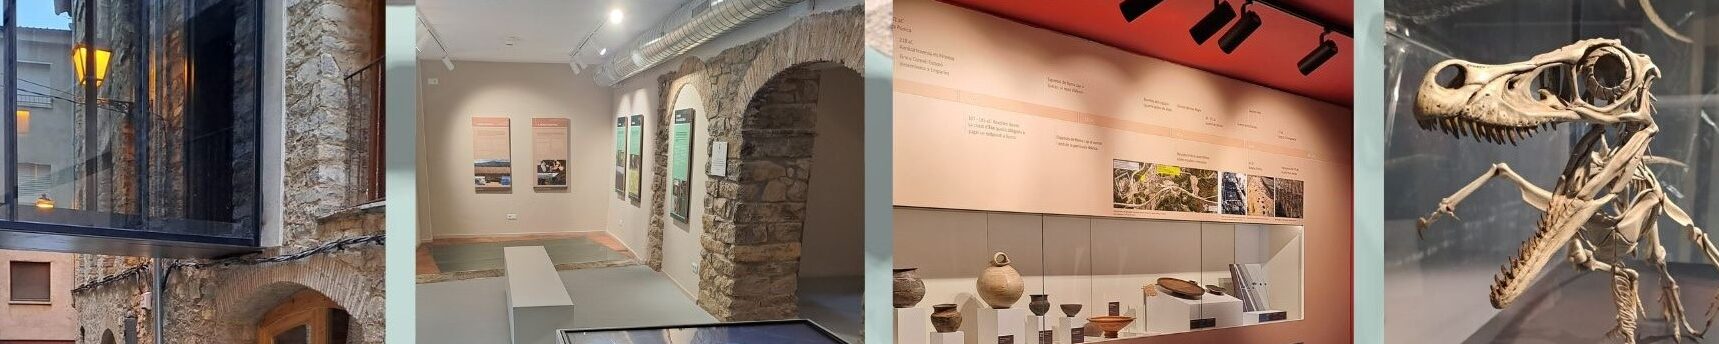 Museu de la Conca Dellà		Isona i Conca Dellà	Lleida	Museo